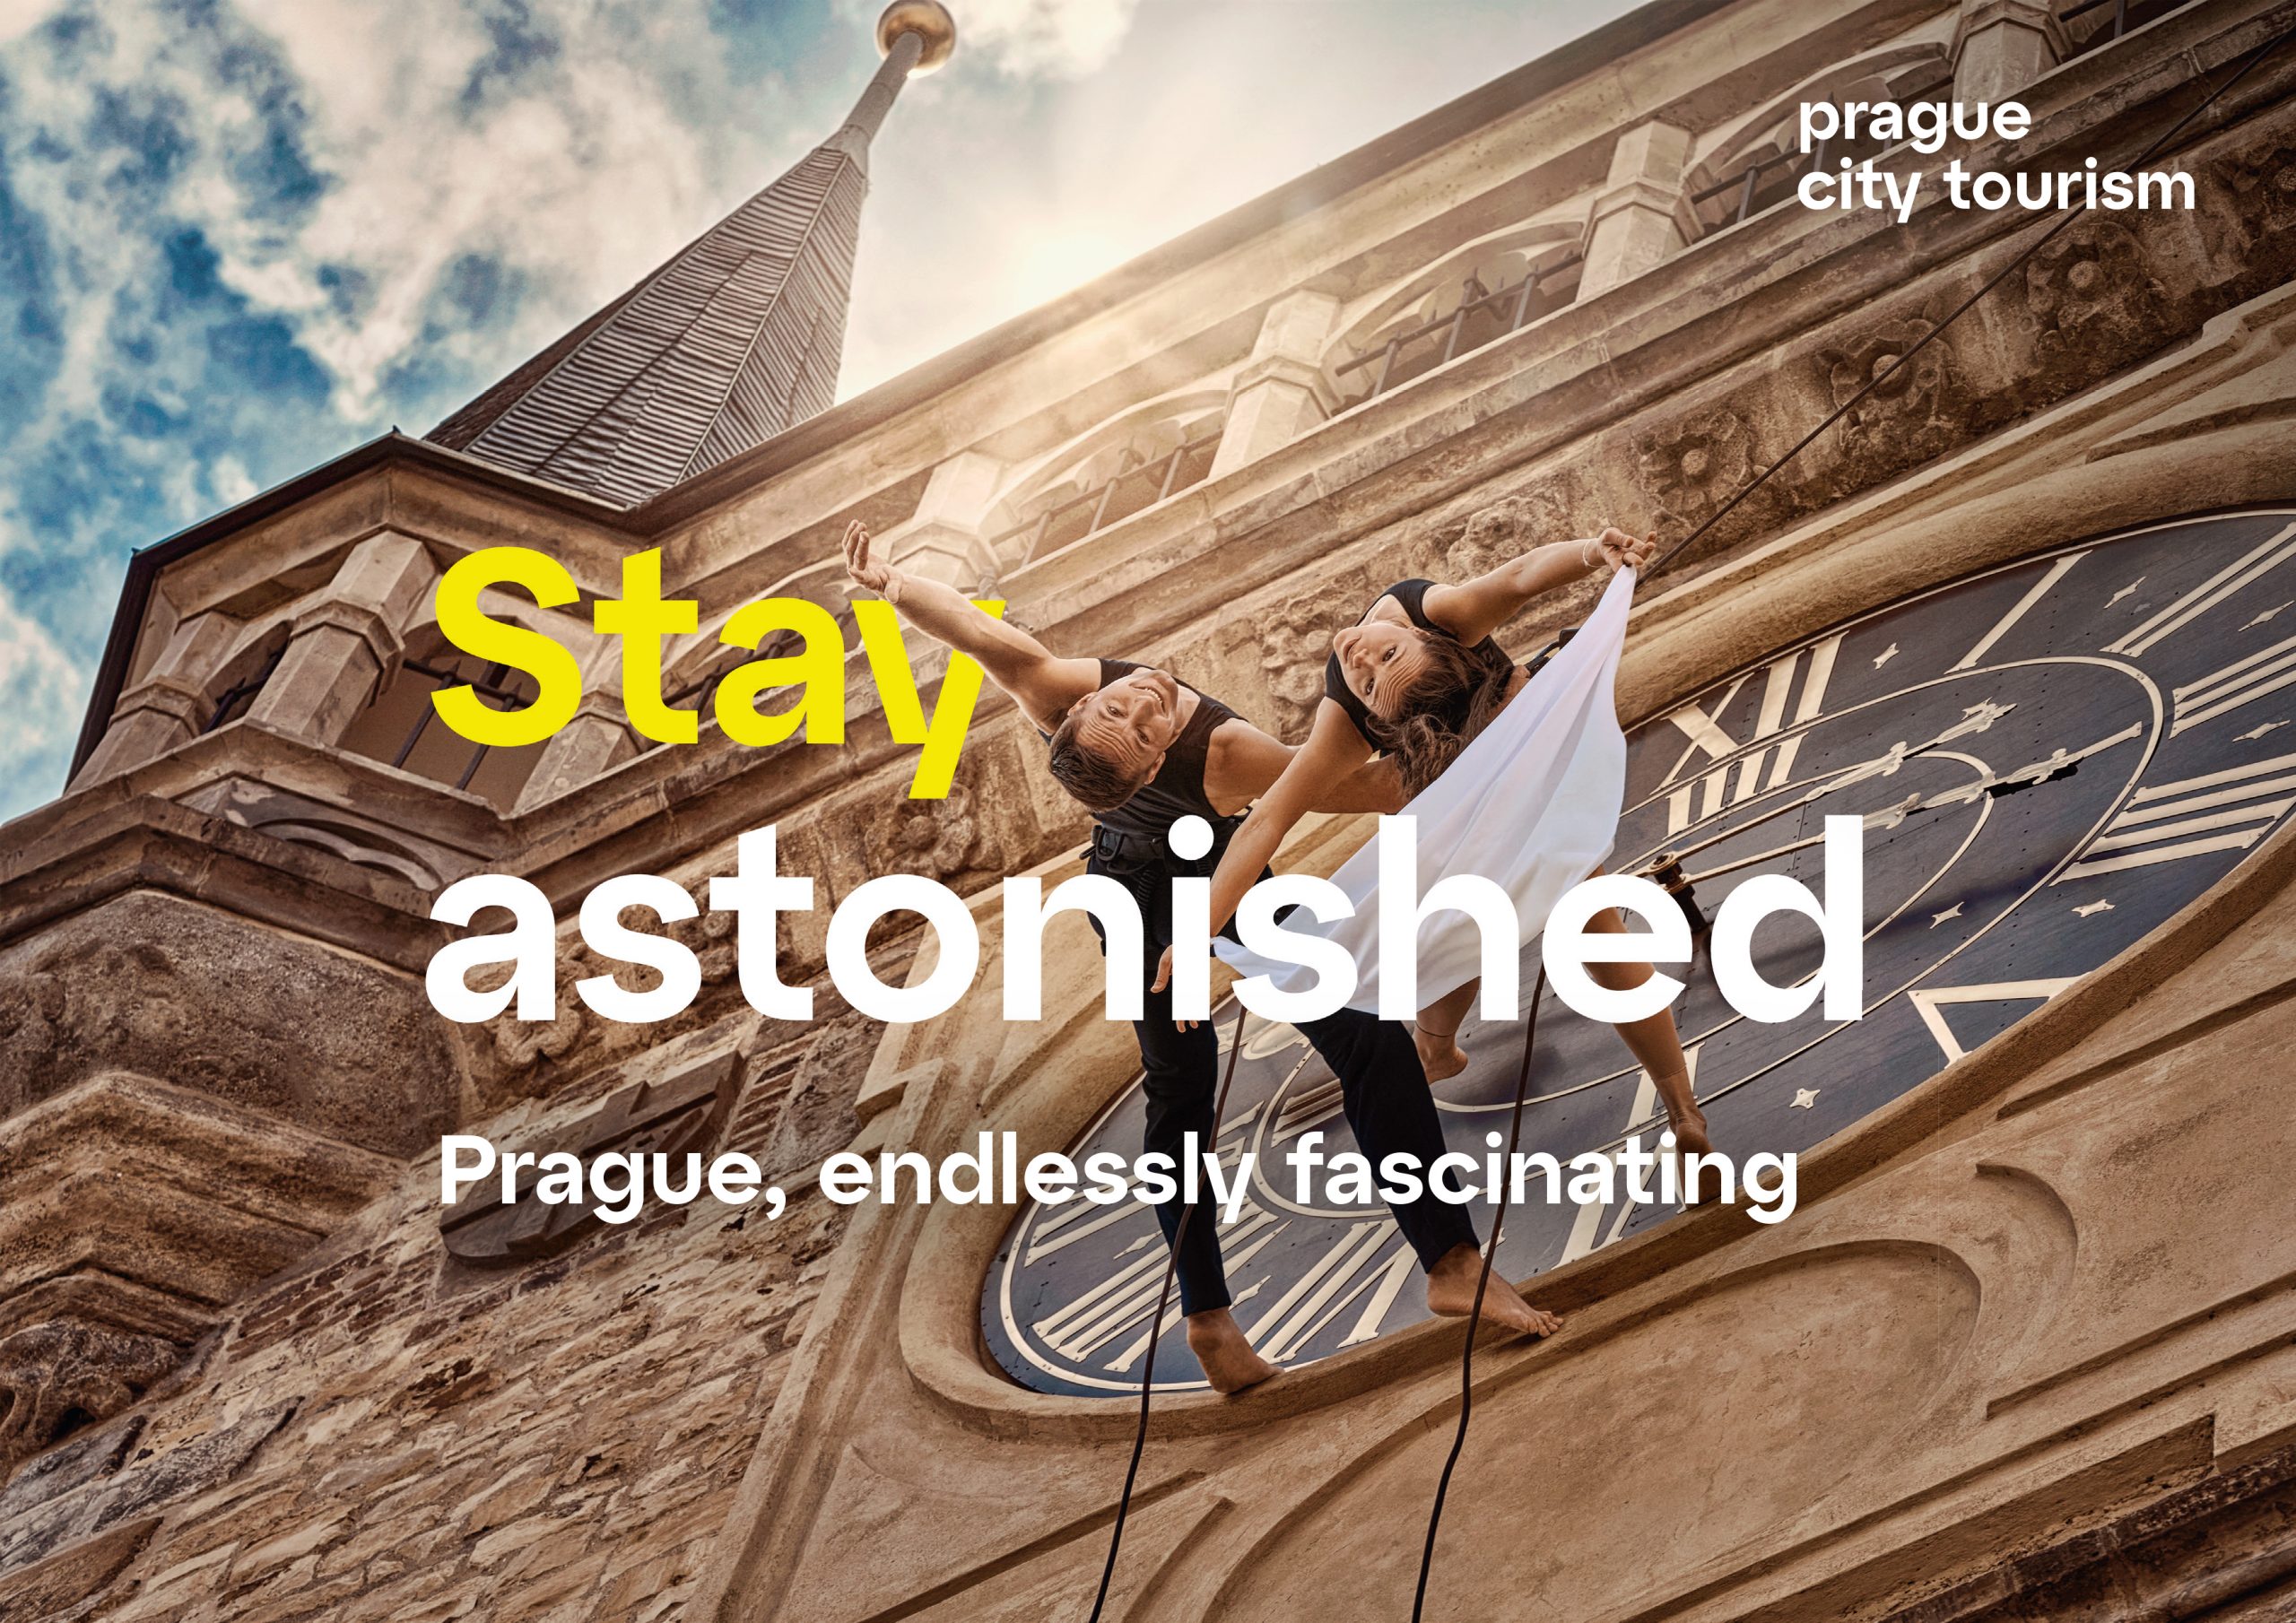 Marketingová kampaň Stay in Prague na podporu turismu v Praze přebrala turisty Vídni a Berlínu - TTG – vše o cestovním ruchu